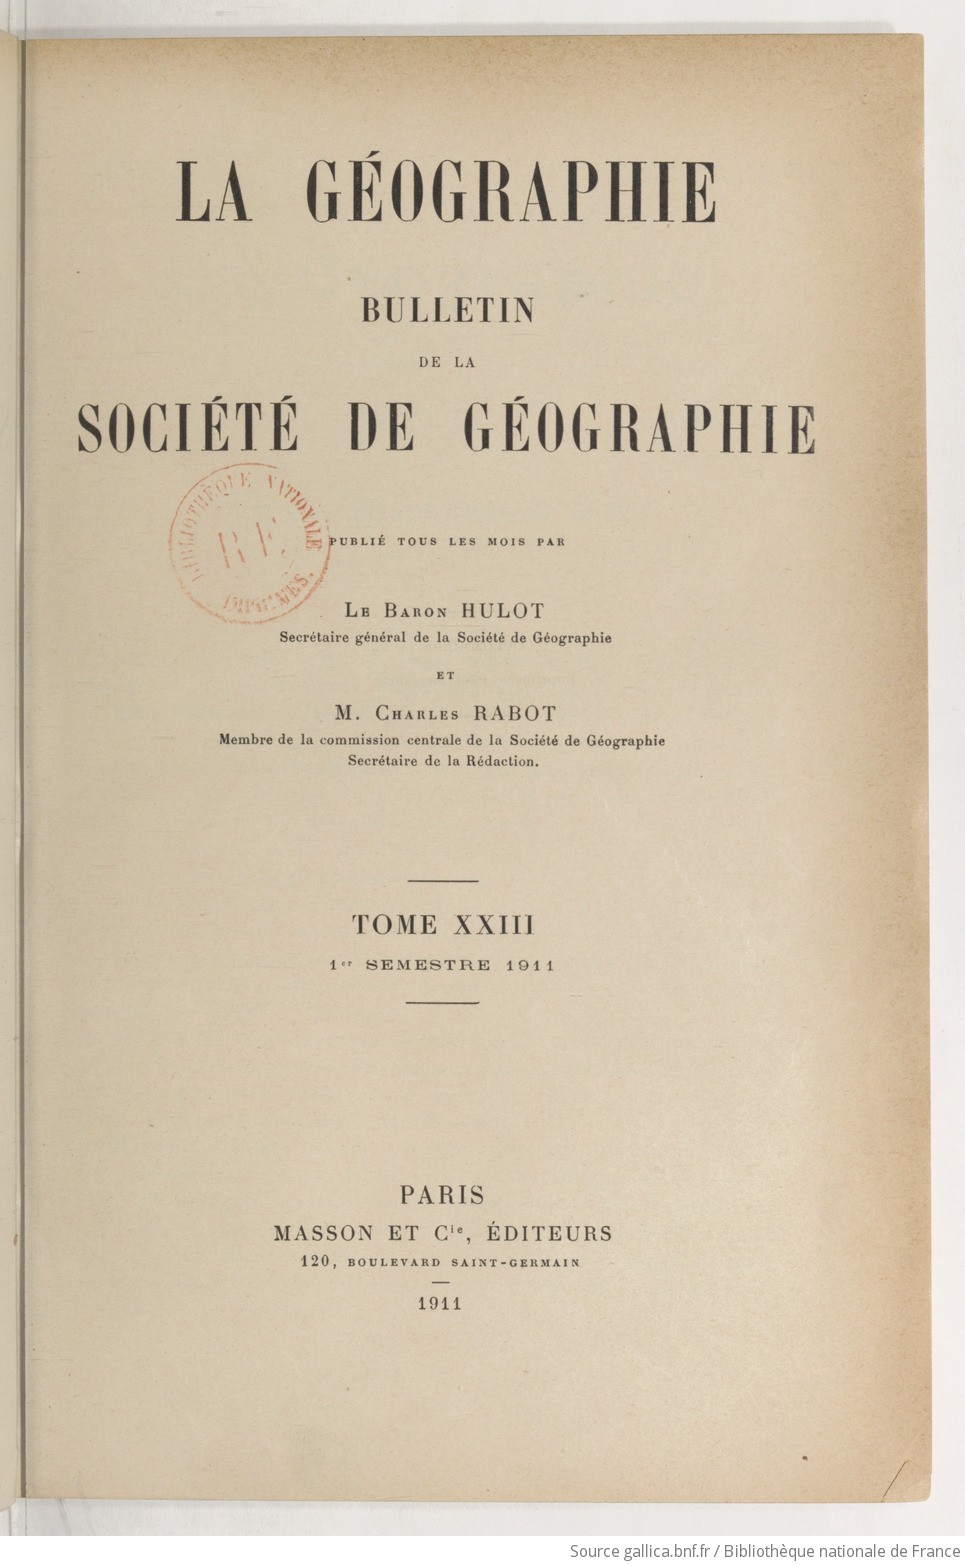 La Géographie : bulletin de la Société de géographie / publié par le baron Hulot,... et Charles Rabot,...